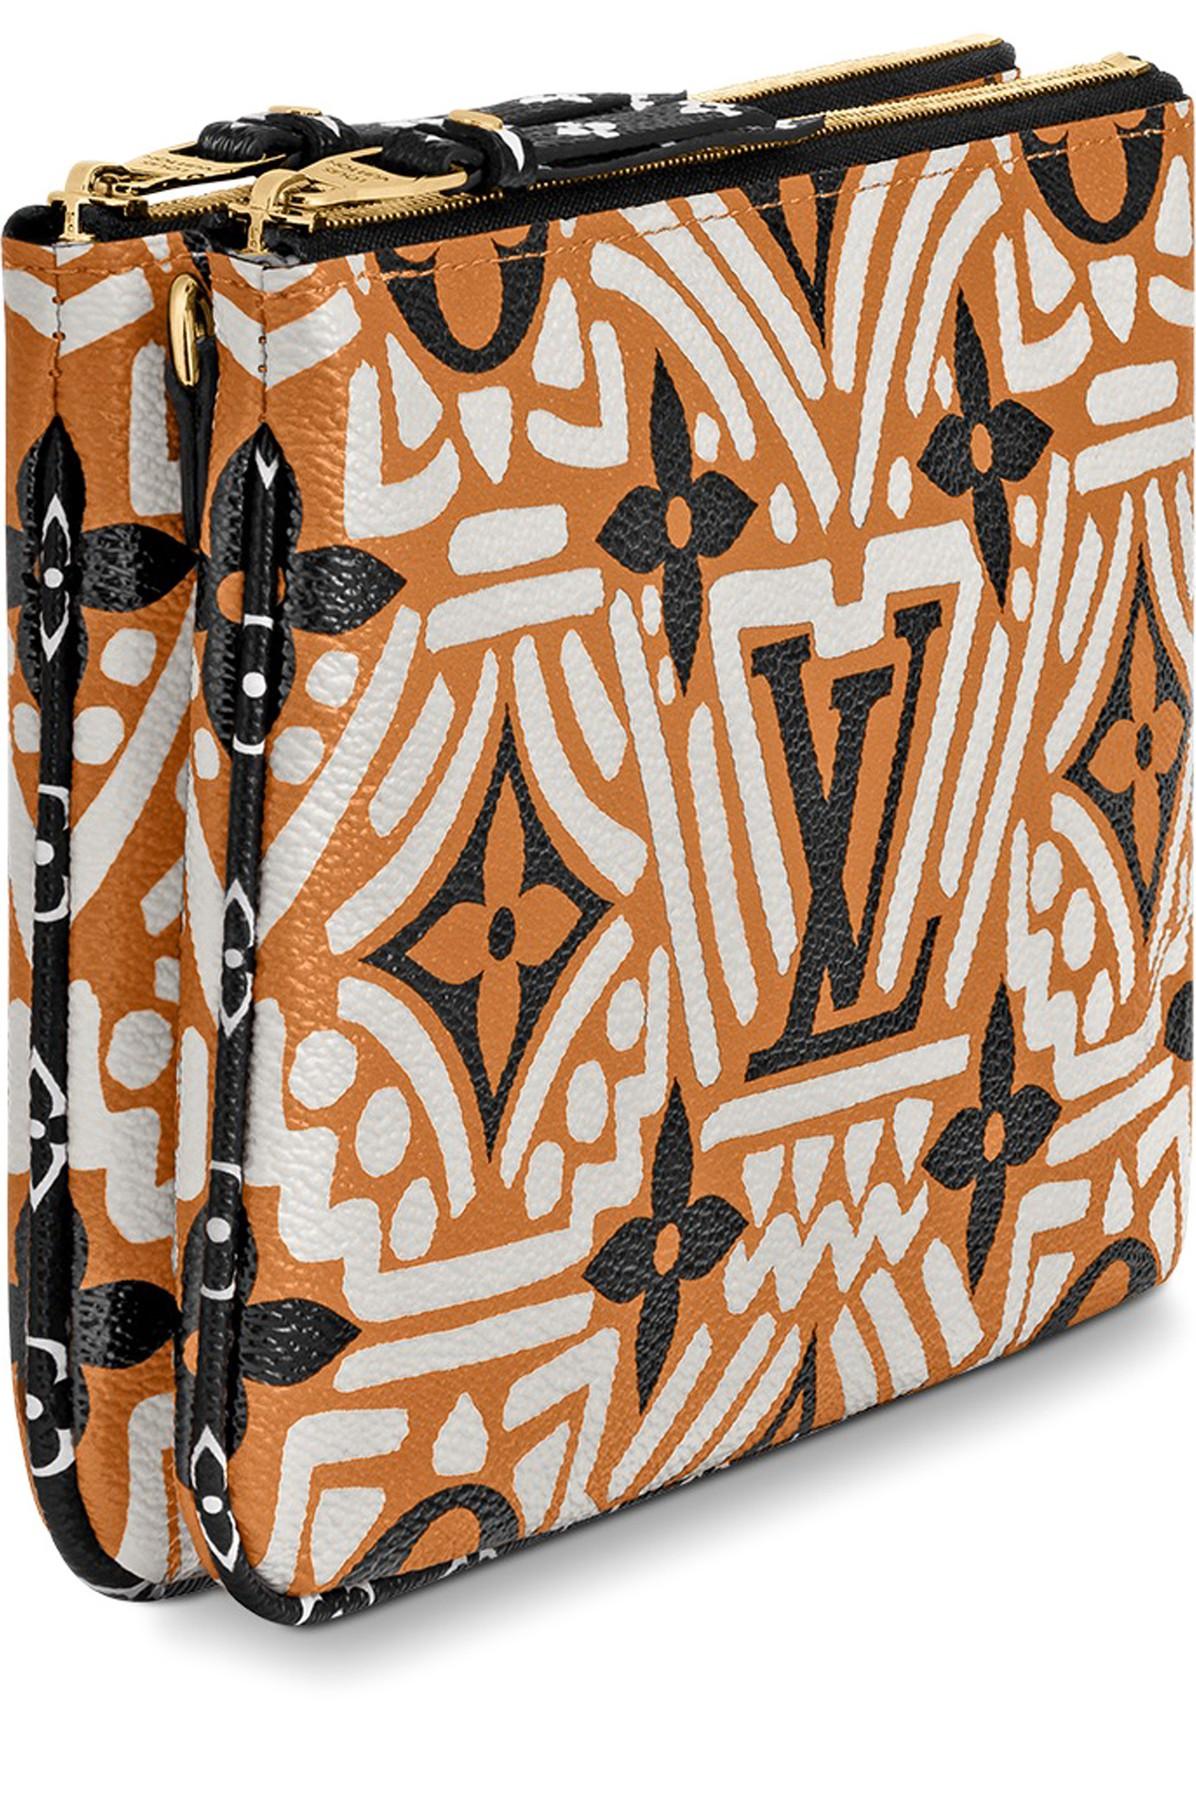 Louis Vuitton Limited Edition Orange/Black Monogram Crafty